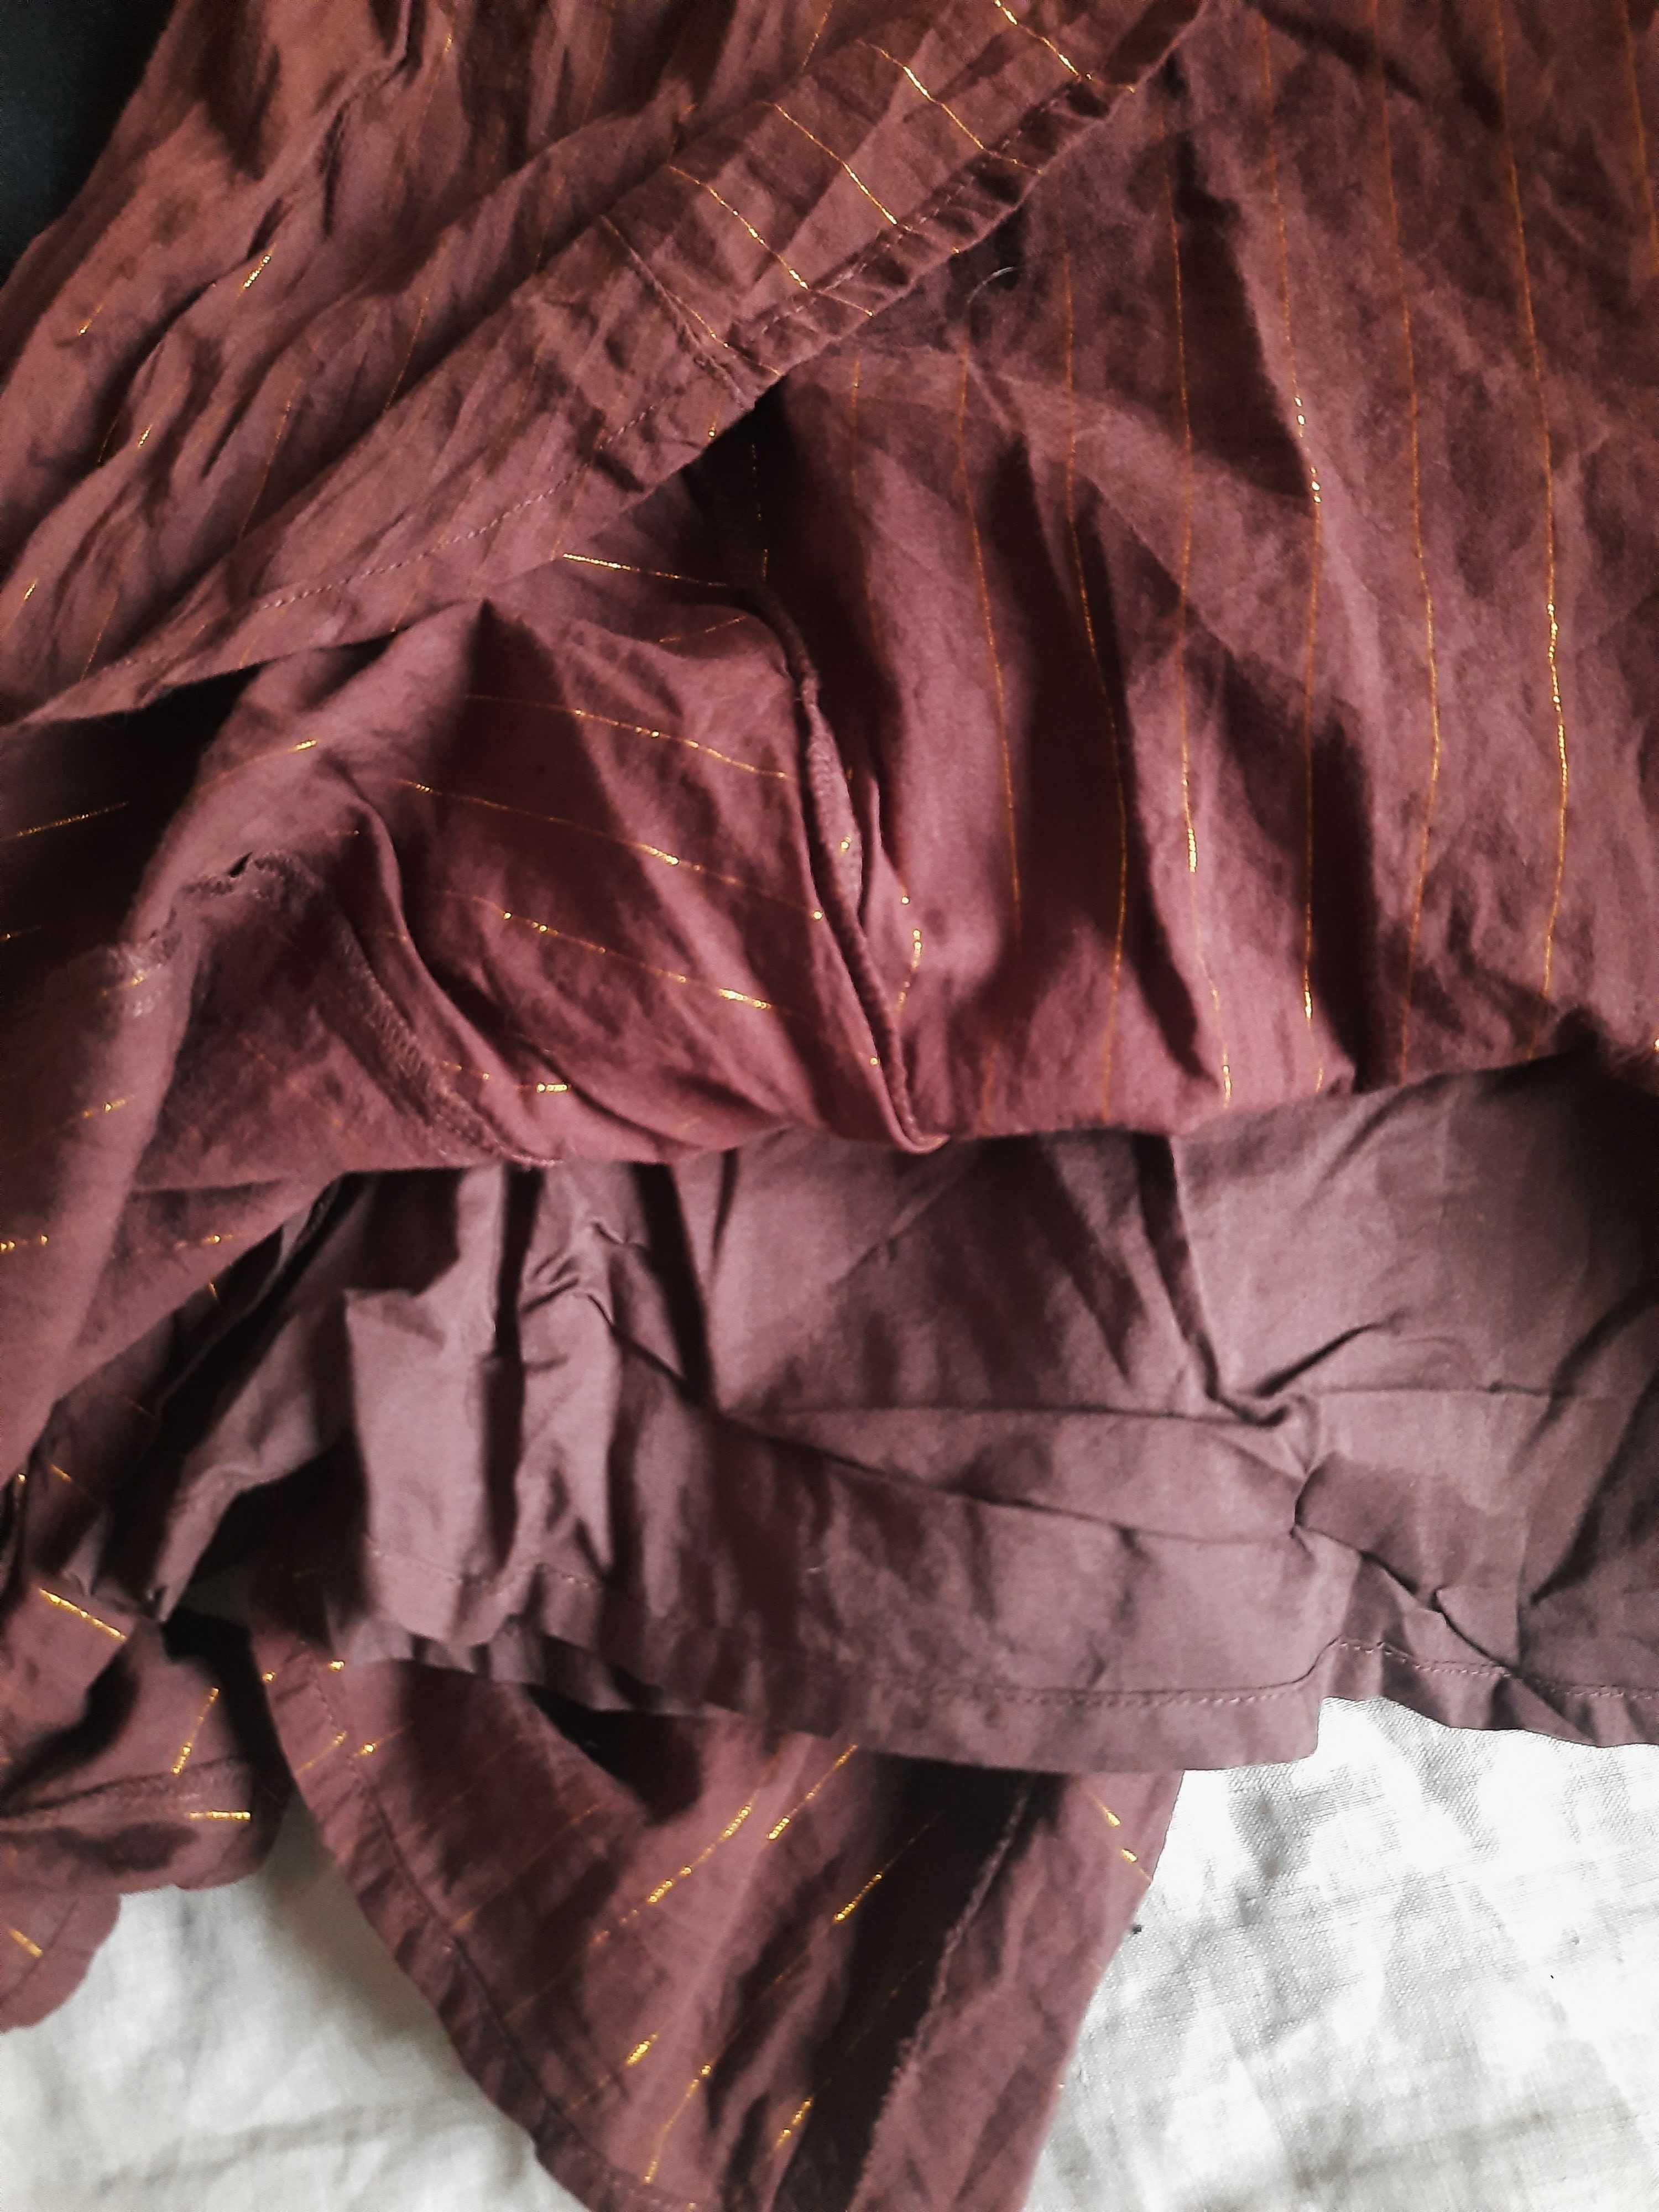 Spódnica Reserved, w paski, wiosenna, plisowana, rozmiar M, złota nić